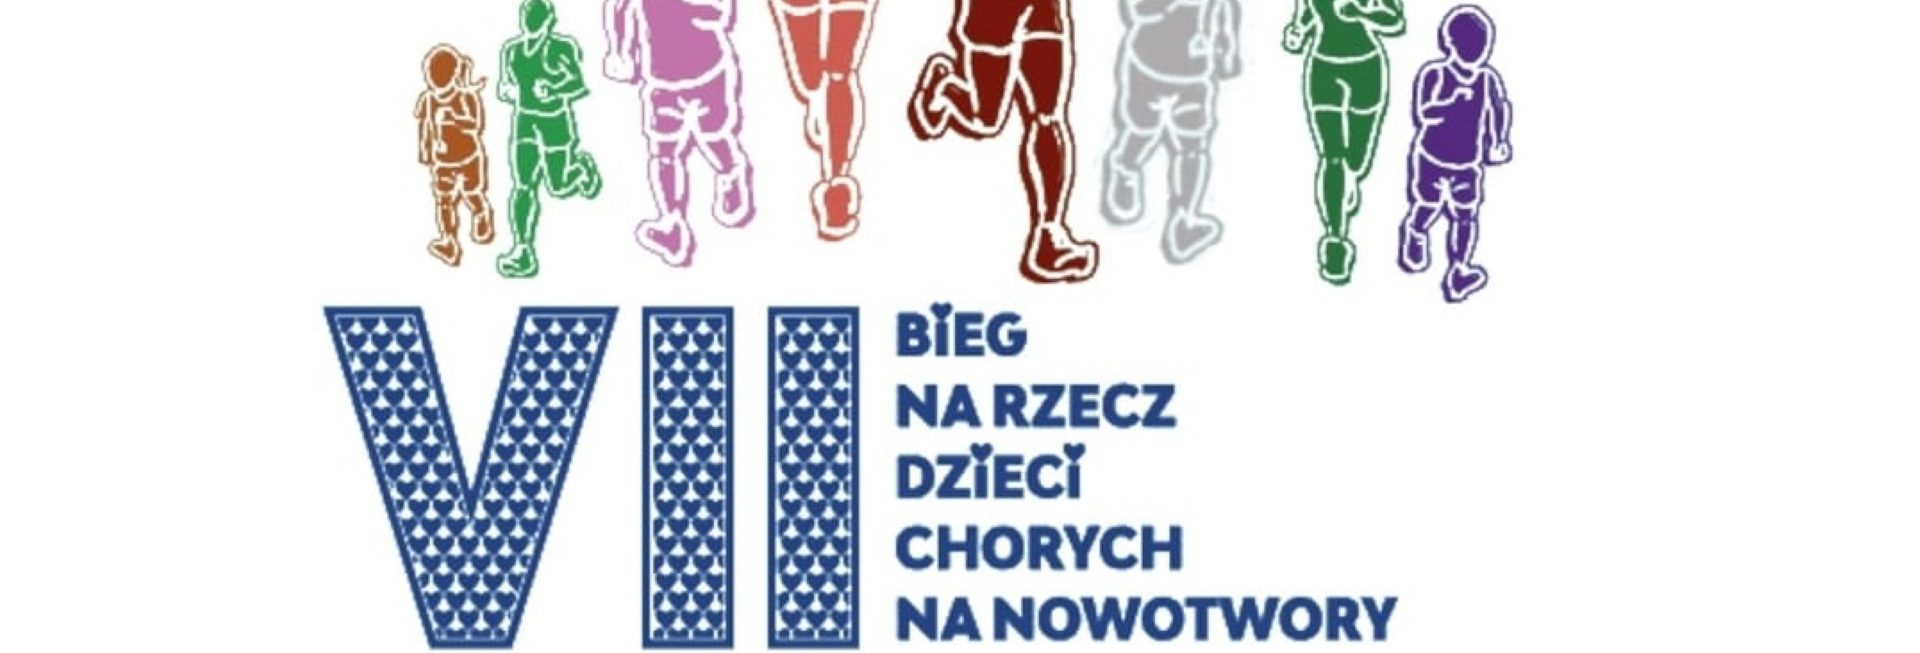 Plakat zapraszający do Starych Jabłonek na bieg charytatywny na rzecz Dzieci chorych na nowotwory Stare Jabłonki 2022.